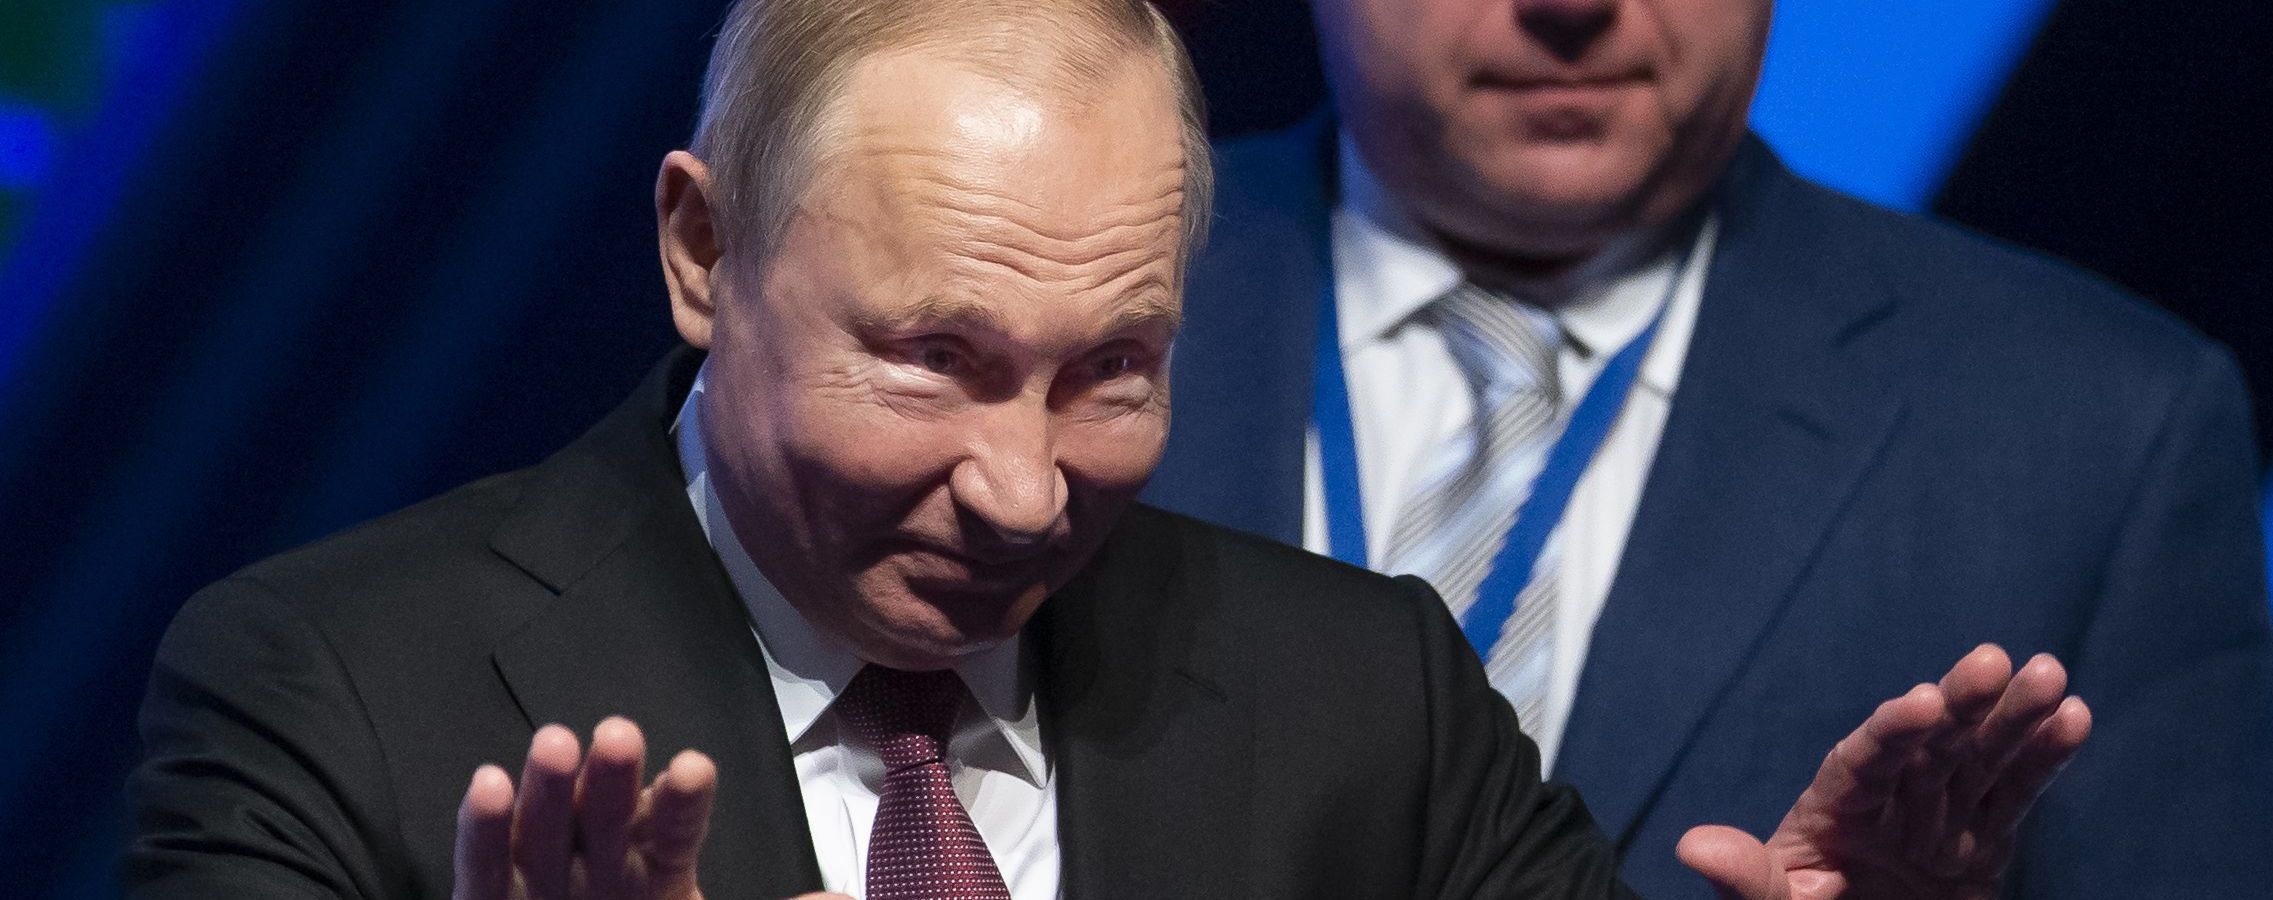 Путин похвалил Мюллера за "экзотическое" и "объективное" расследование